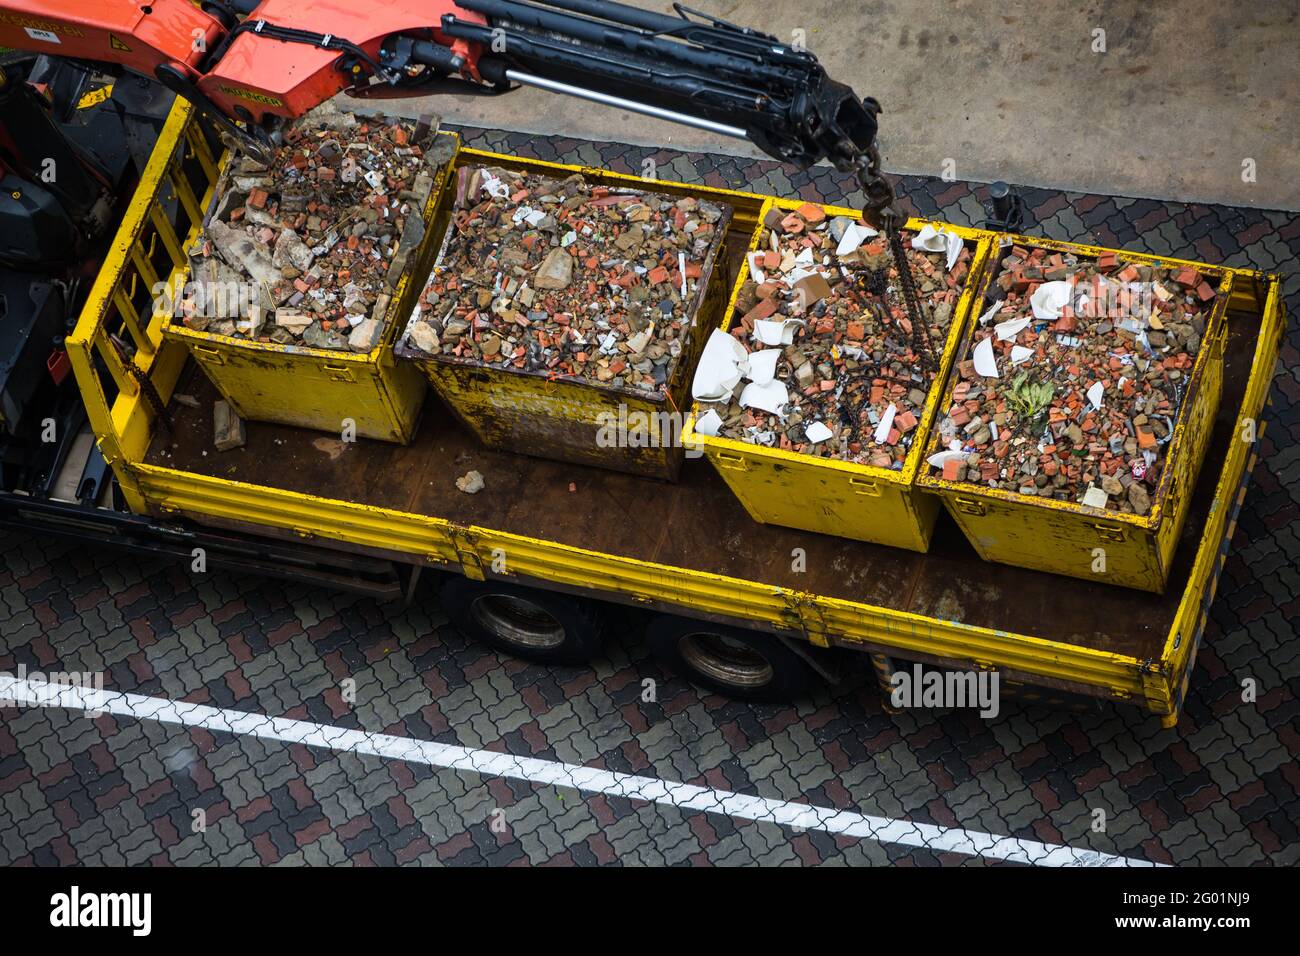 Grue de chariot de flèche abaissant les énormes conteneurs métalliques à l'arrière pour le transport. Banque D'Images